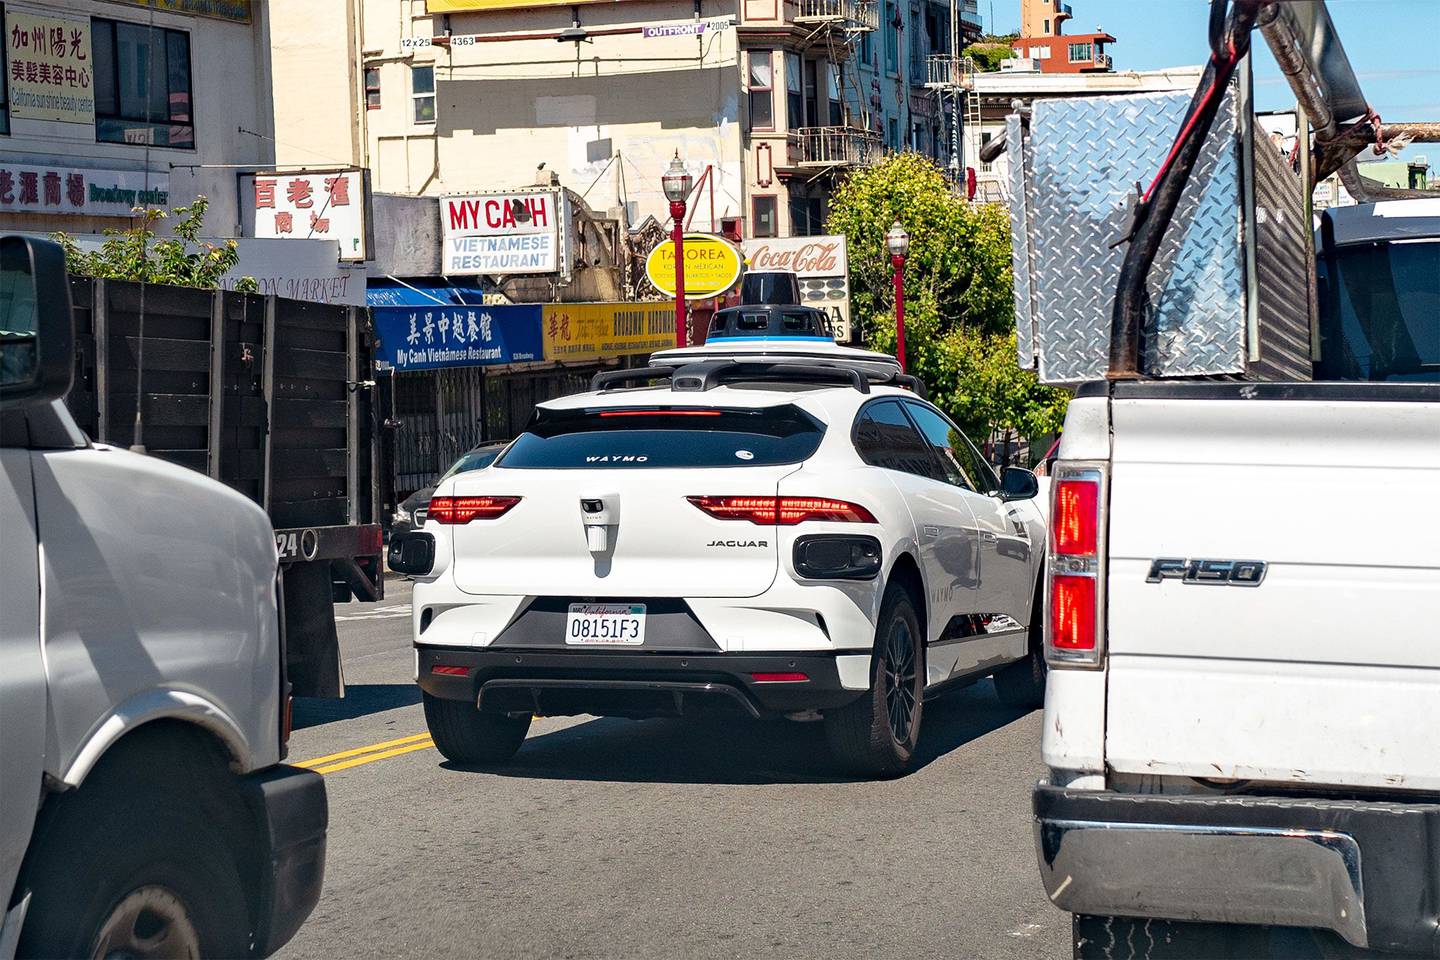 Veículo autônomo da Waymo, sem motorista, em circulação nas ruas de São Francisco, na Califórnia